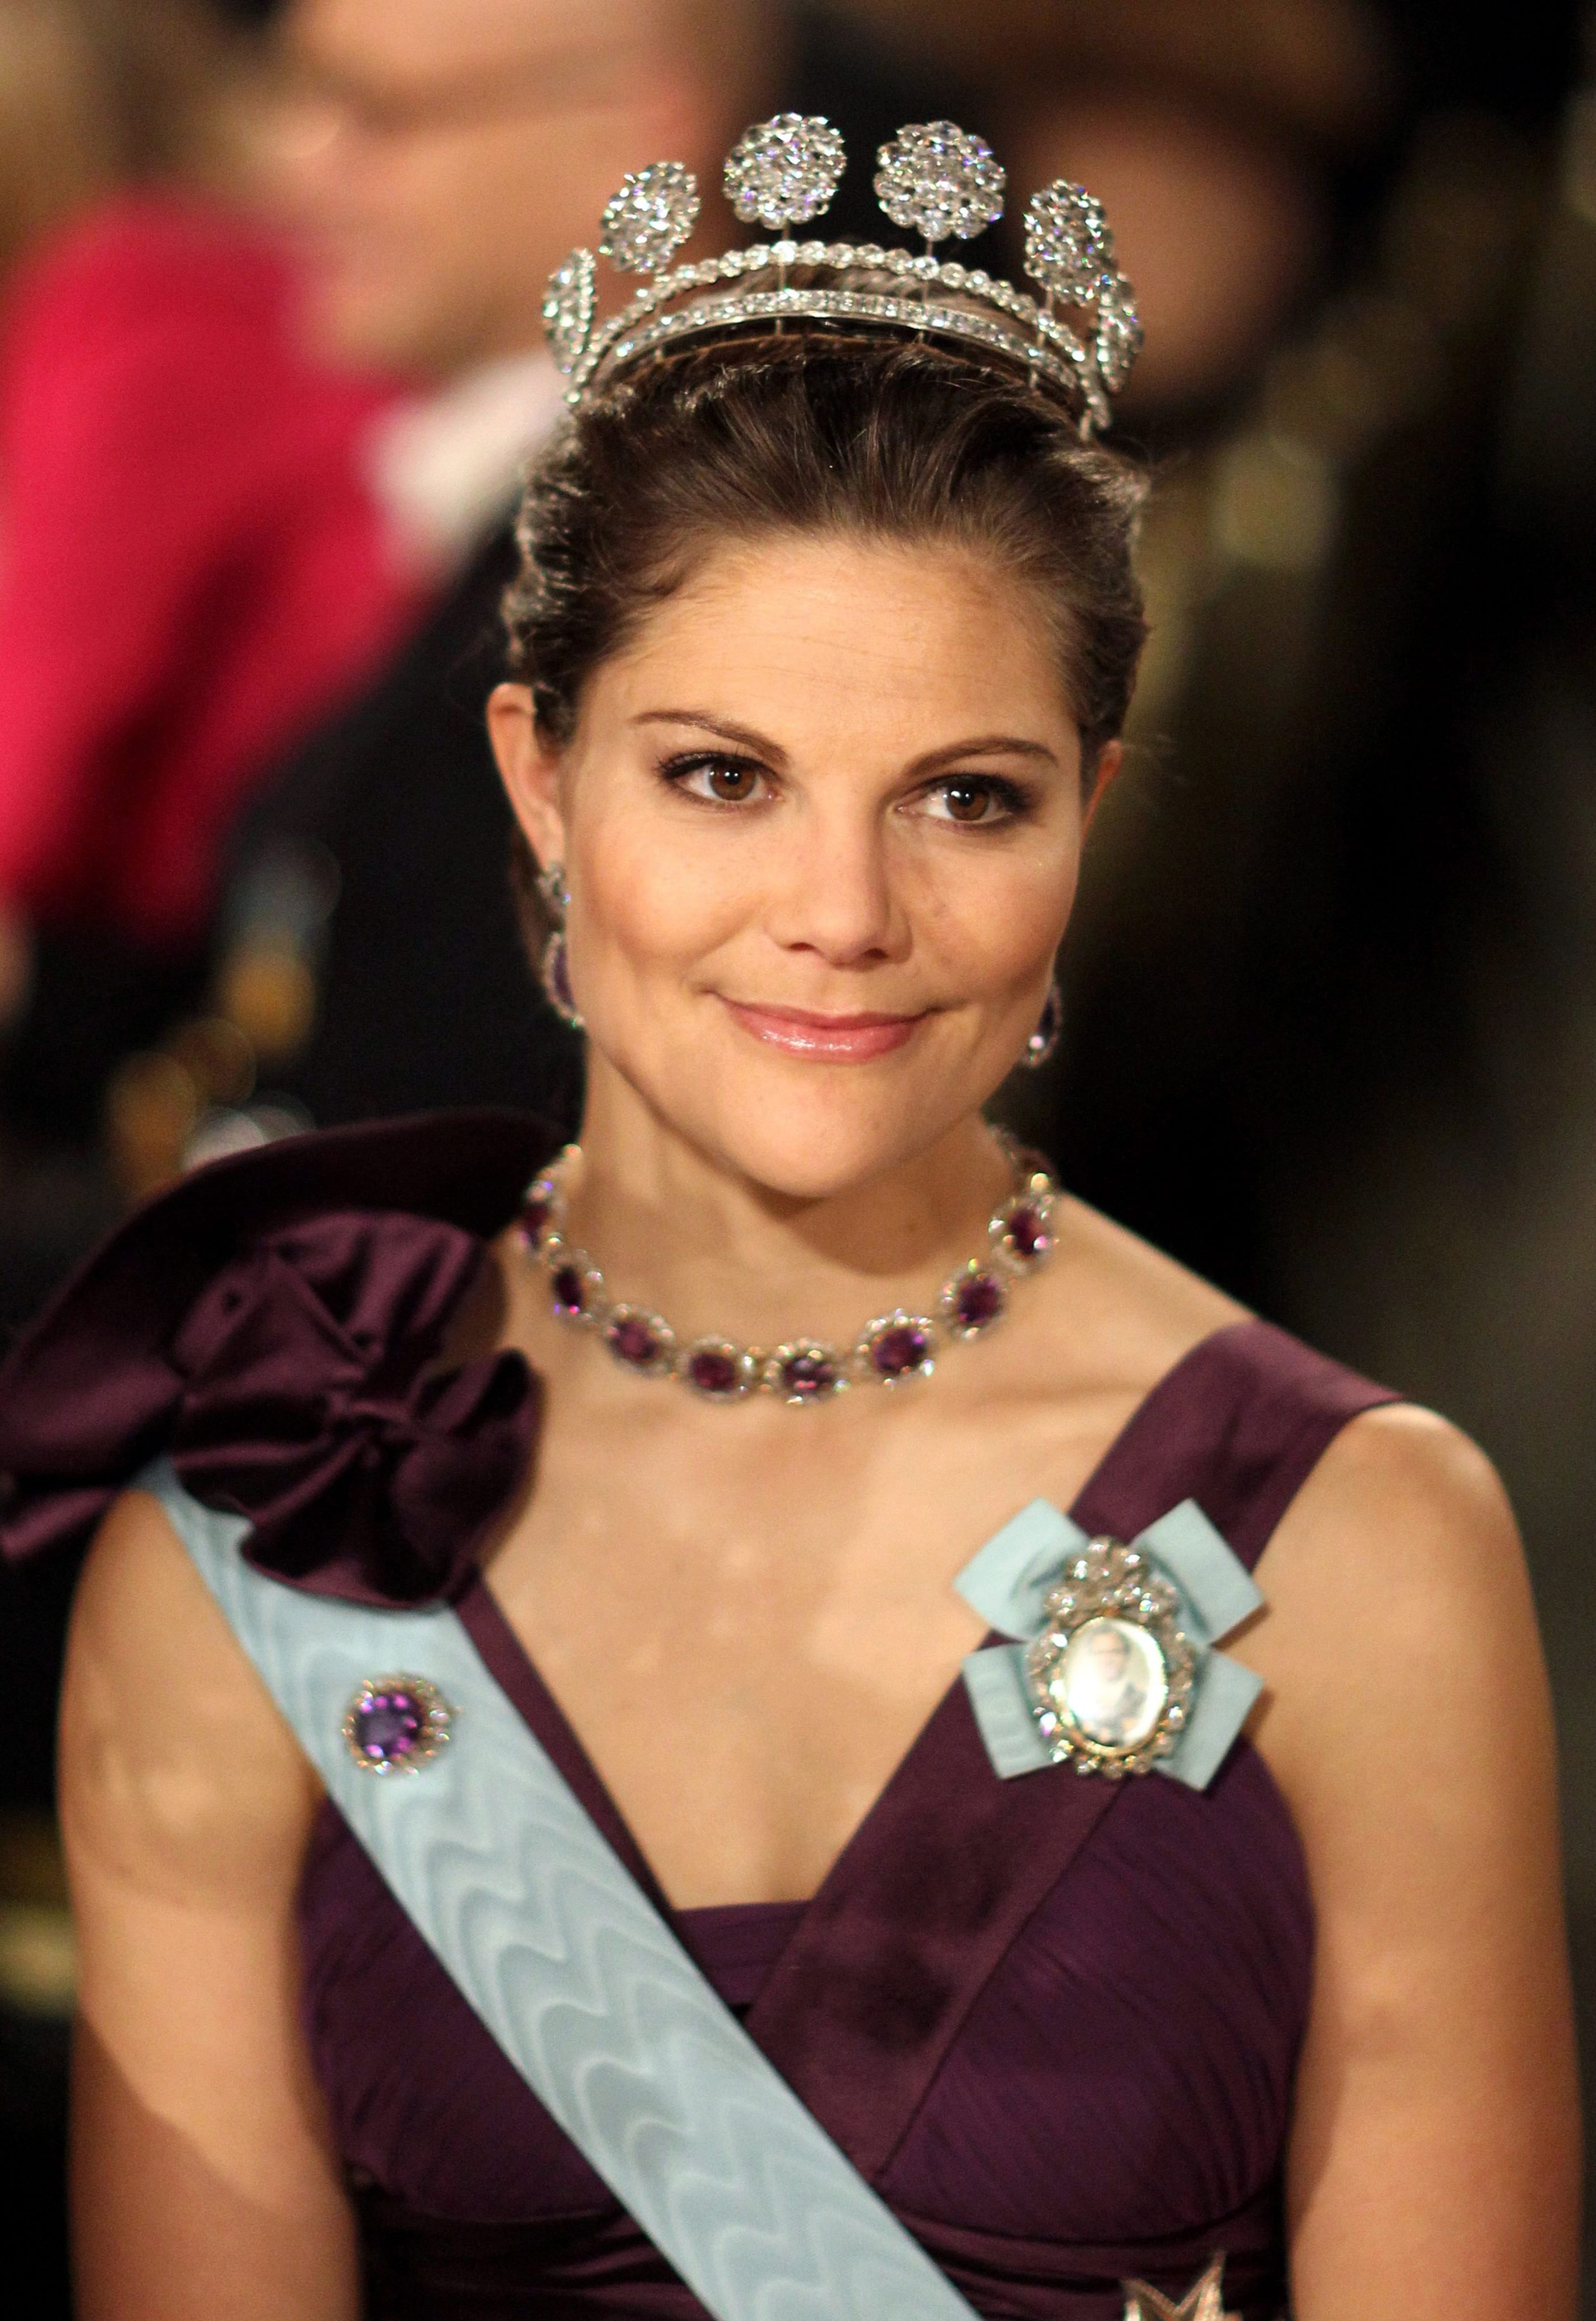 2009: Victoria in de tiara met de zes knoppen.